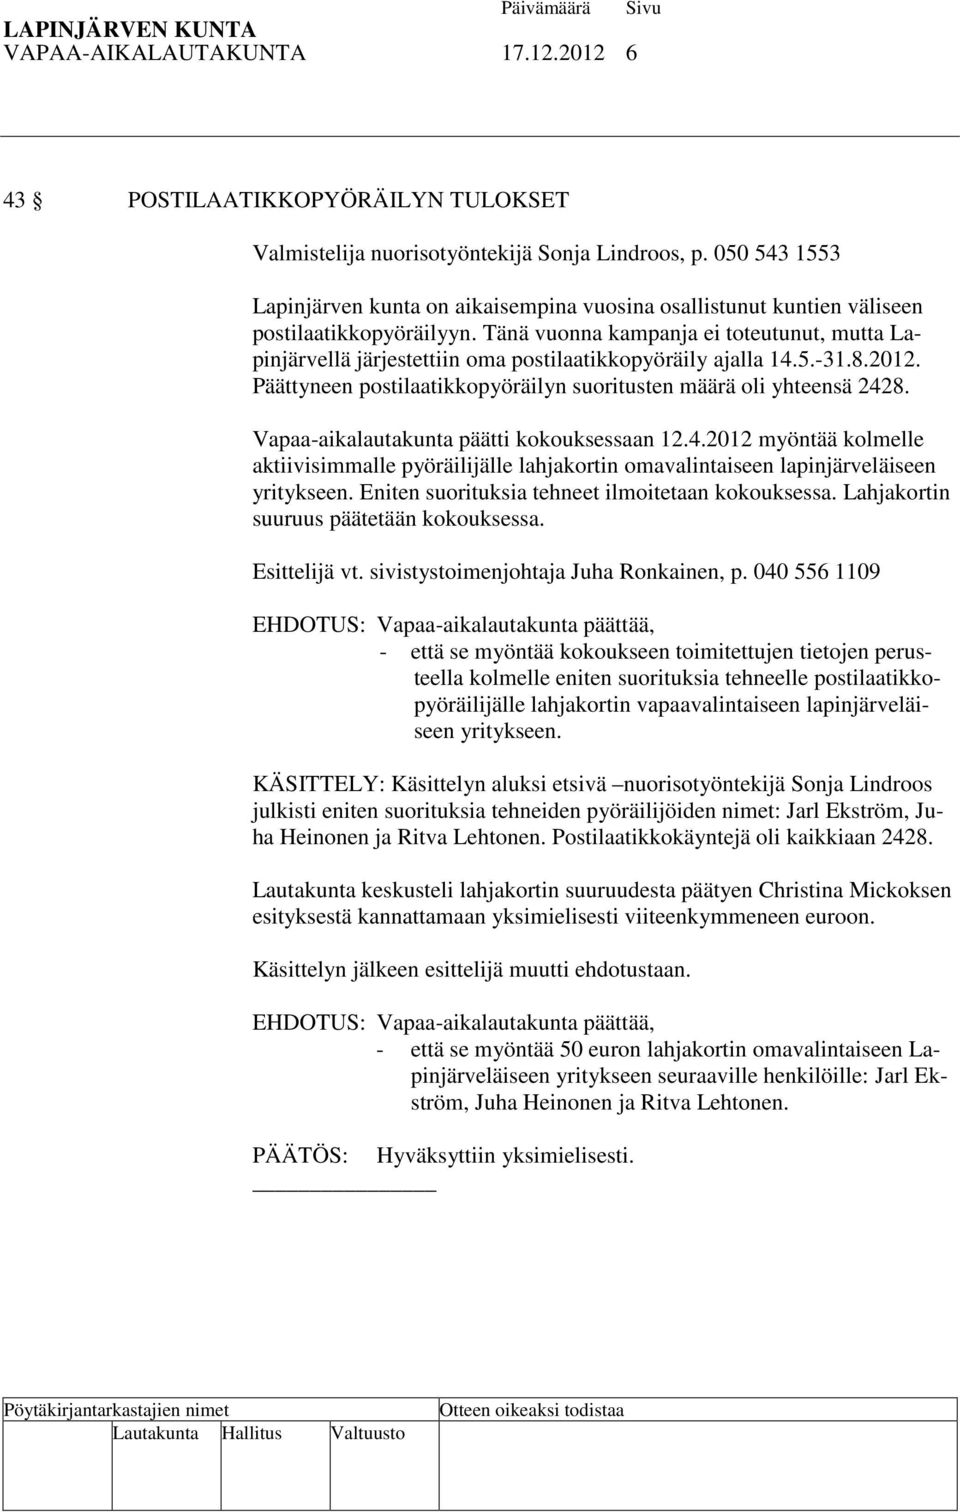 Tänä vuonna kampanja ei toteutunut, mutta Lapinjärvellä järjestettiin oma postilaatikkopyöräily ajalla 14.5.-31.8.2012. Päättyneen postilaatikkopyöräilyn suoritusten määrä oli yhteensä 2428.